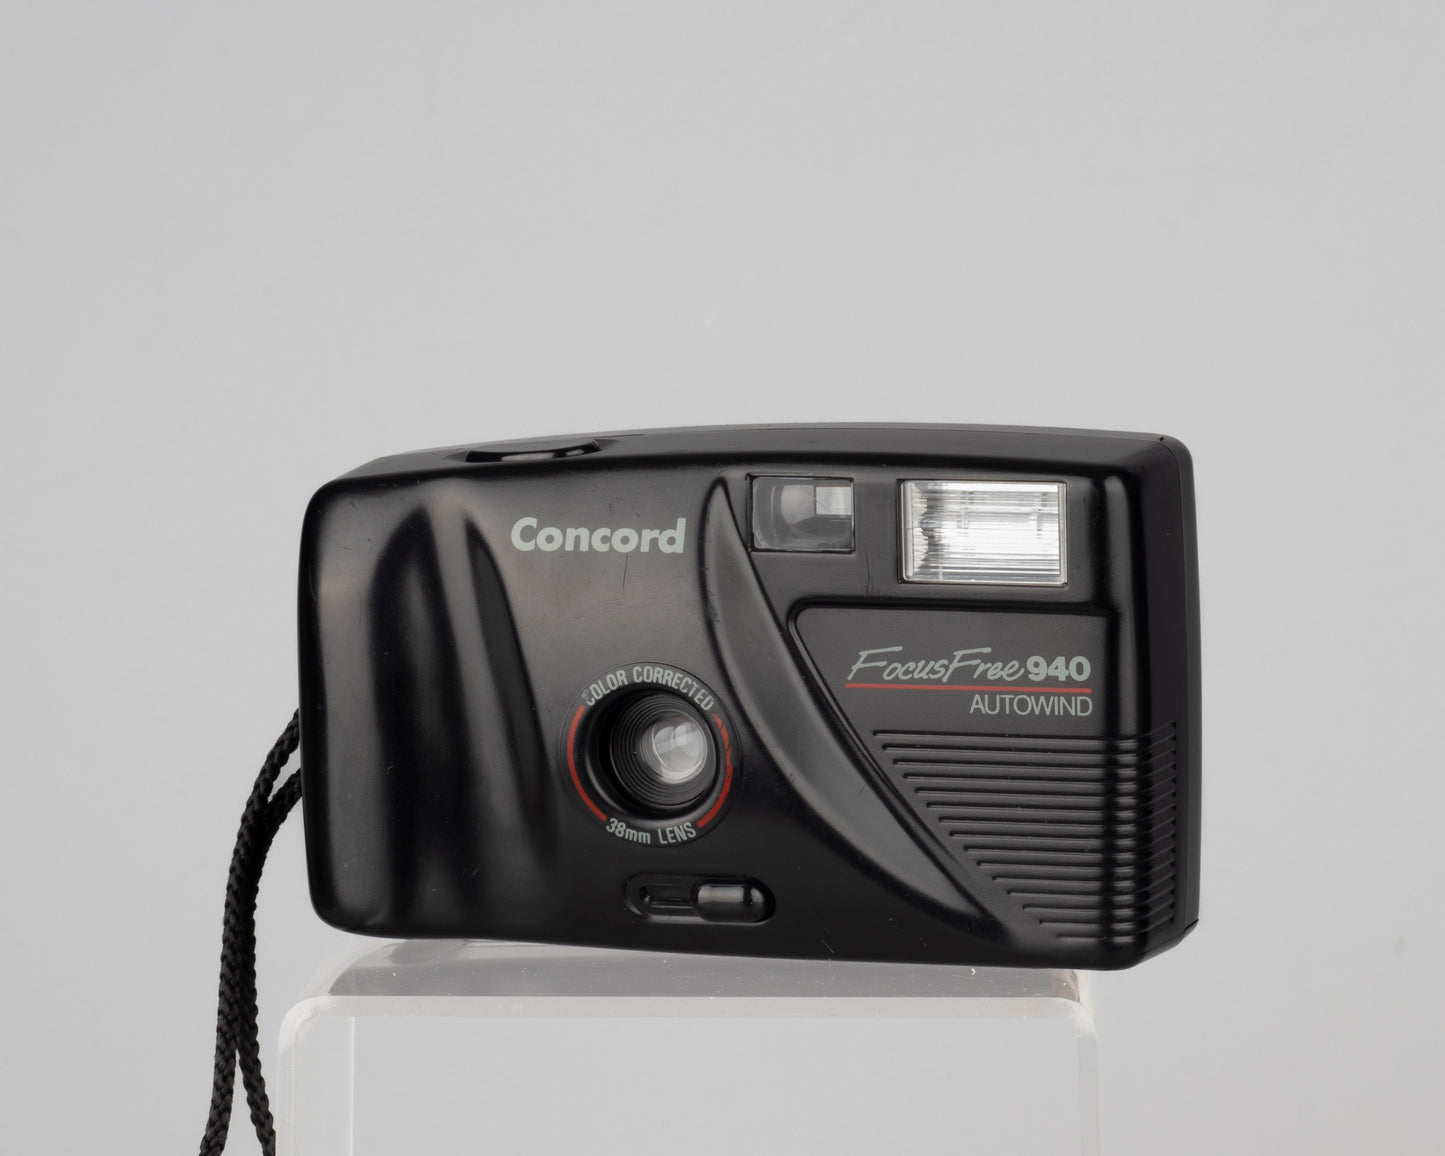 Concord Focus Free 940 Autowind 35mm film camera